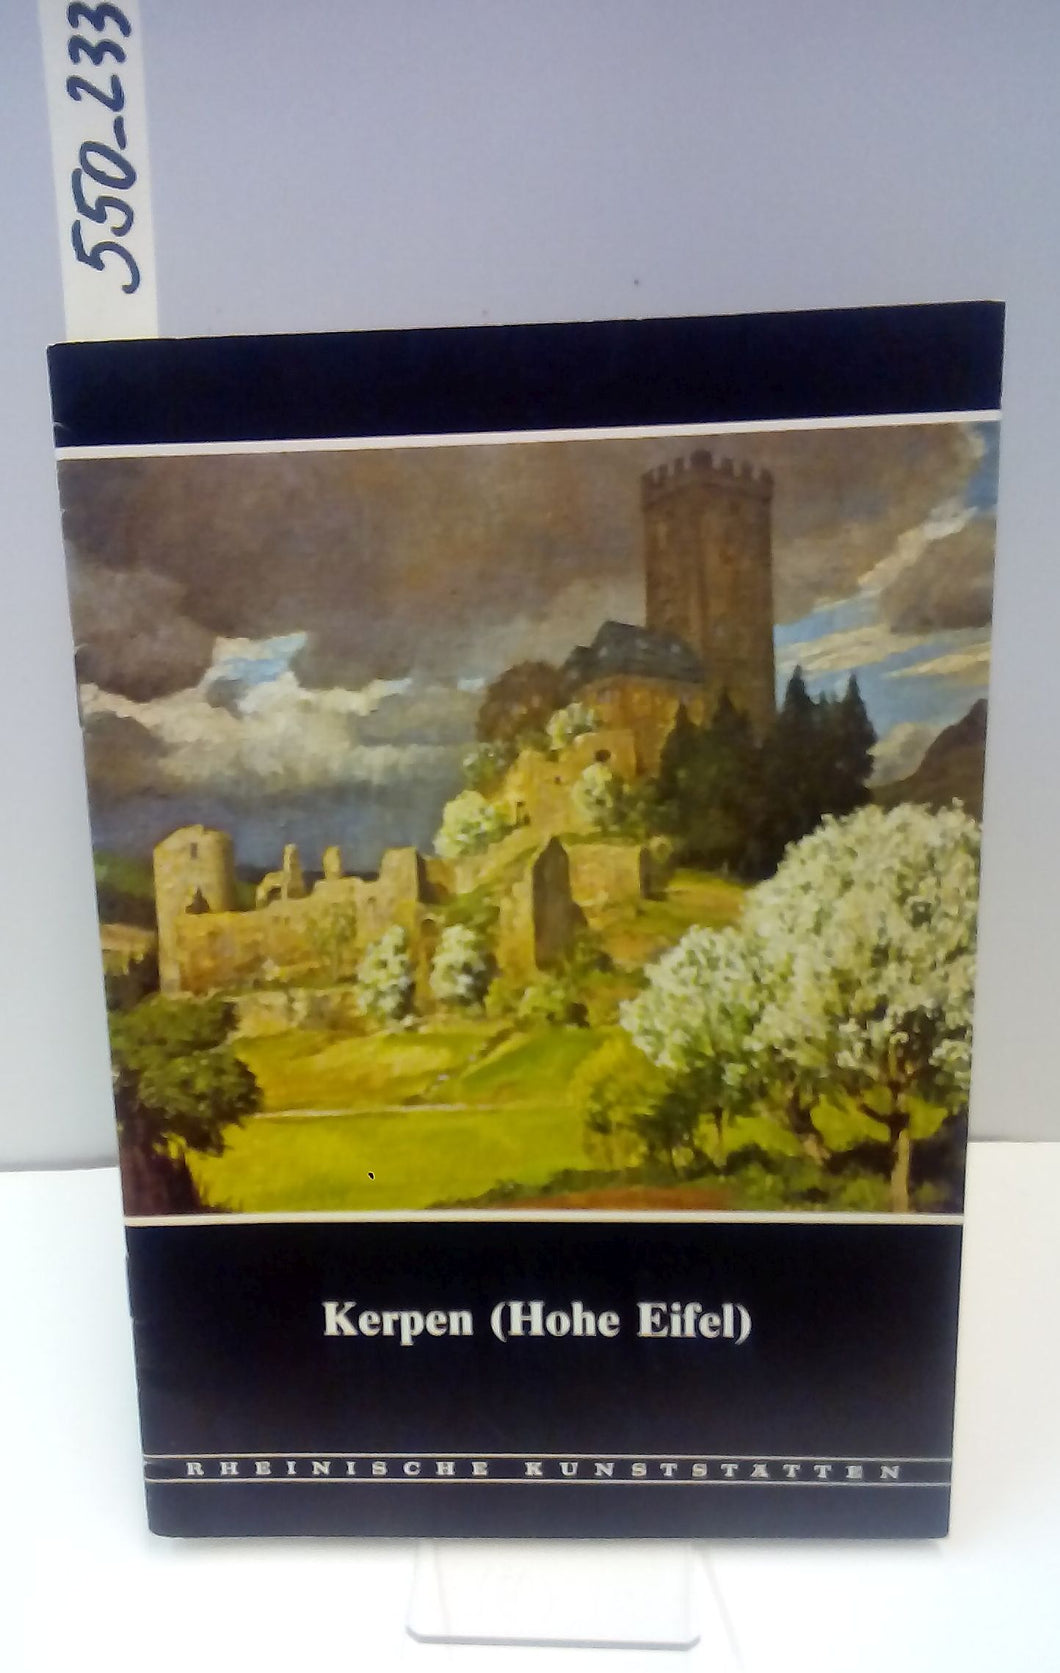 Rheinische Kunststätten Heft 233 - Kerpen (Hohe Eifel) (1980)